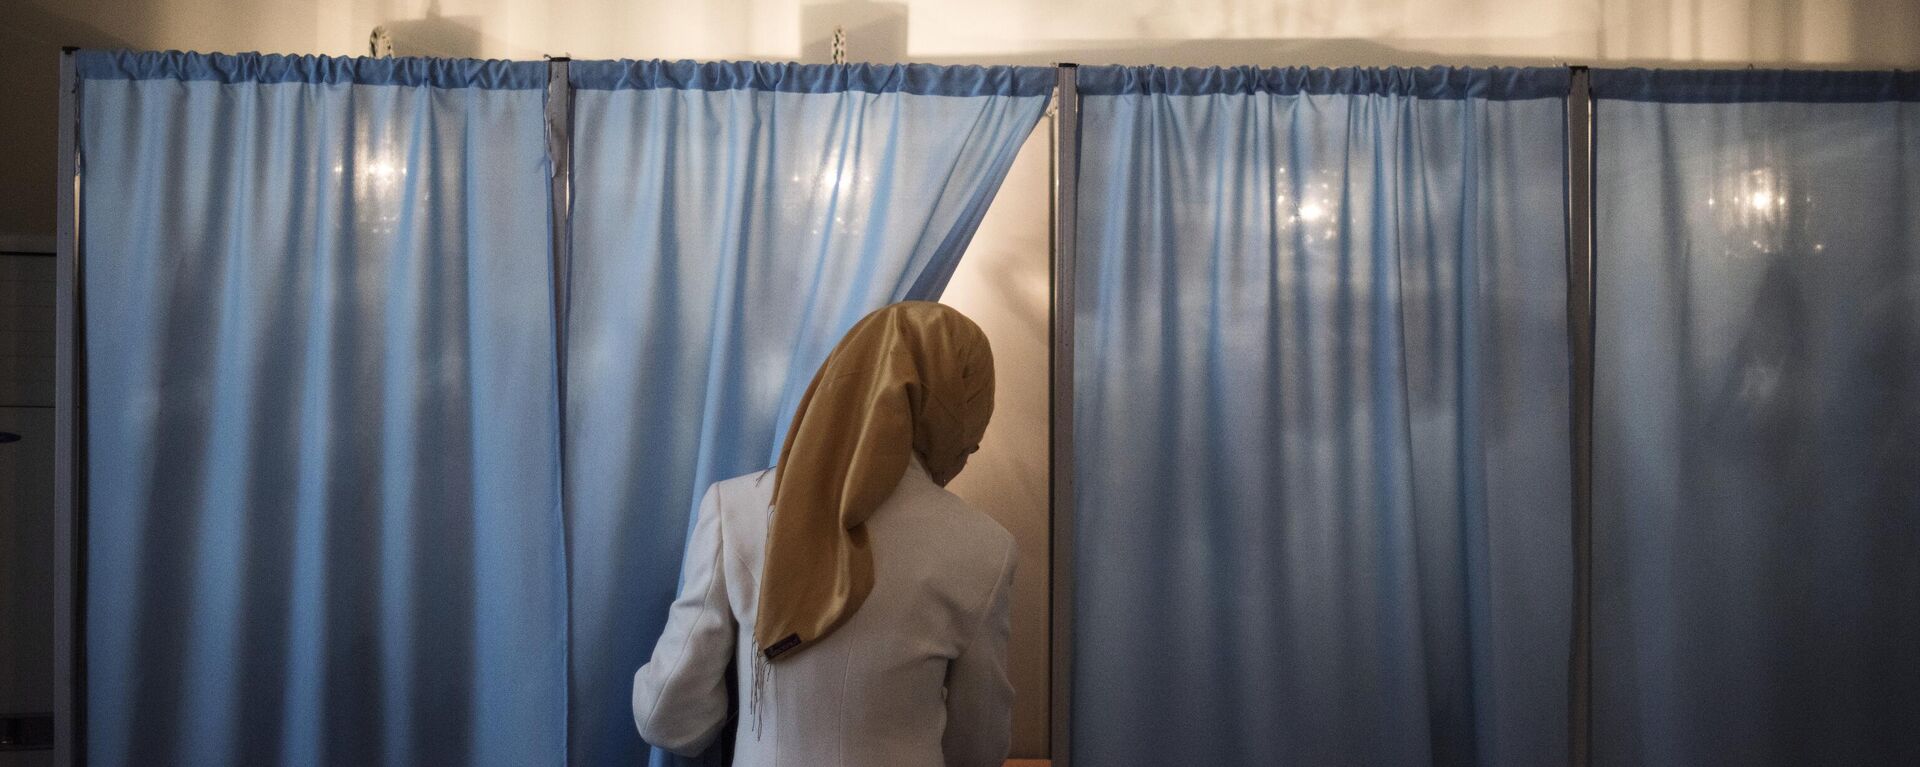 Женщина голосует на избирательном участке во время выборов президента Узбекистана. Архивное фото - Sputnik Узбекистан, 1920, 20.09.2021